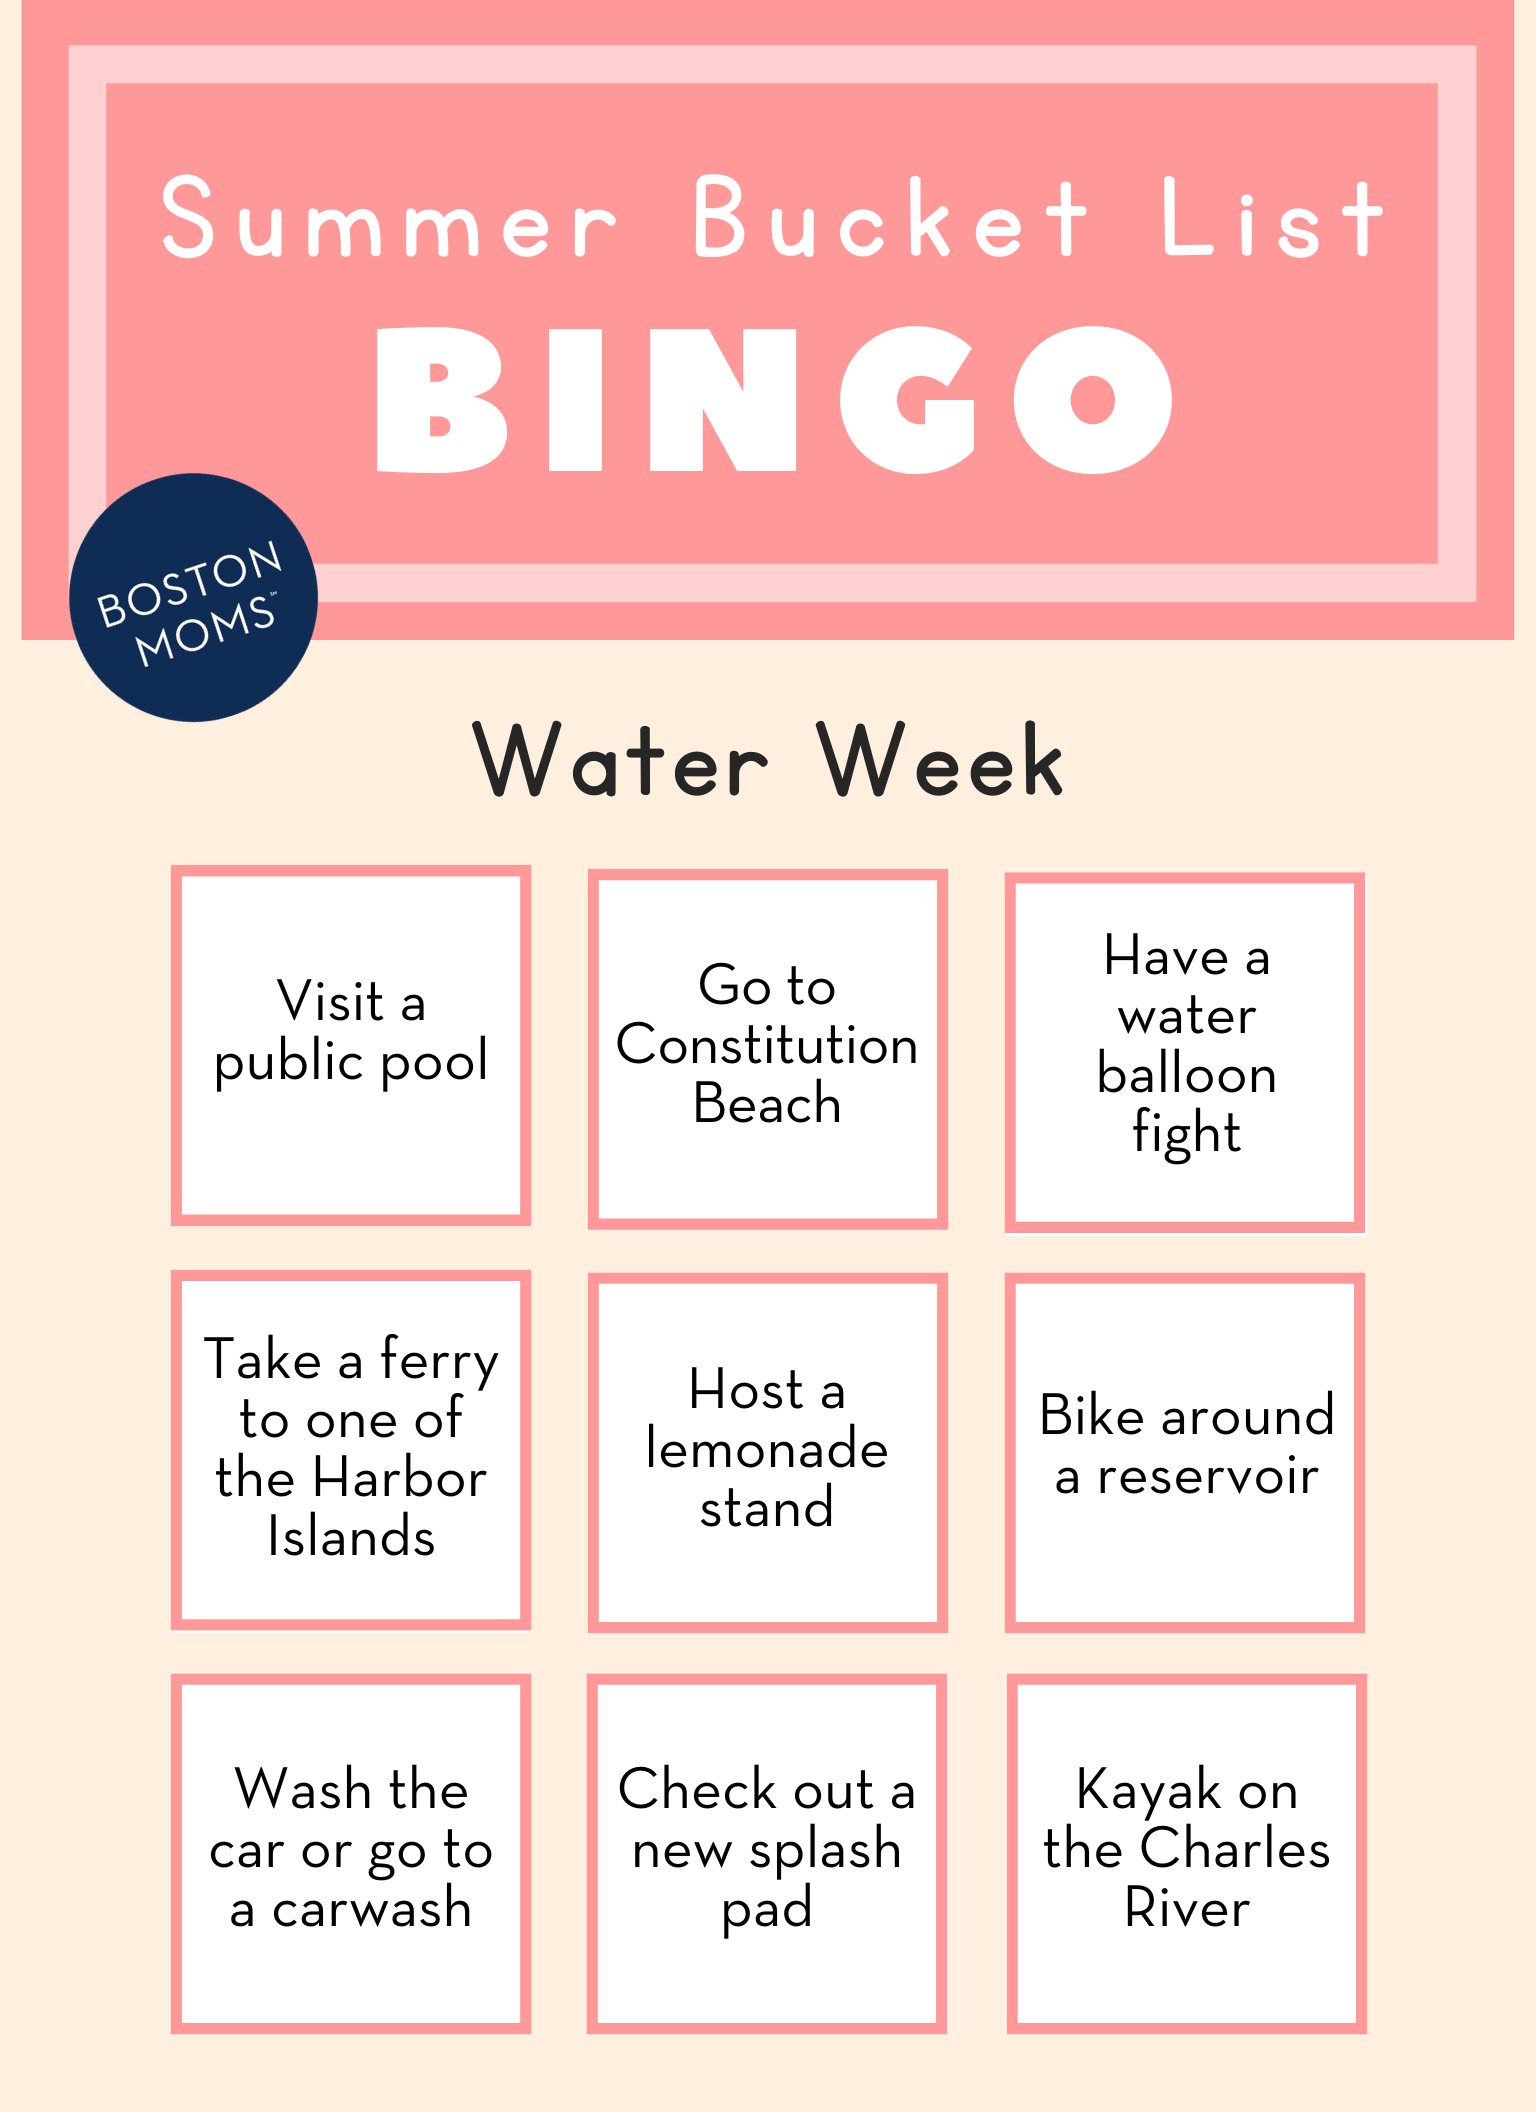 Boston summer bucket list for kids - water week bingo